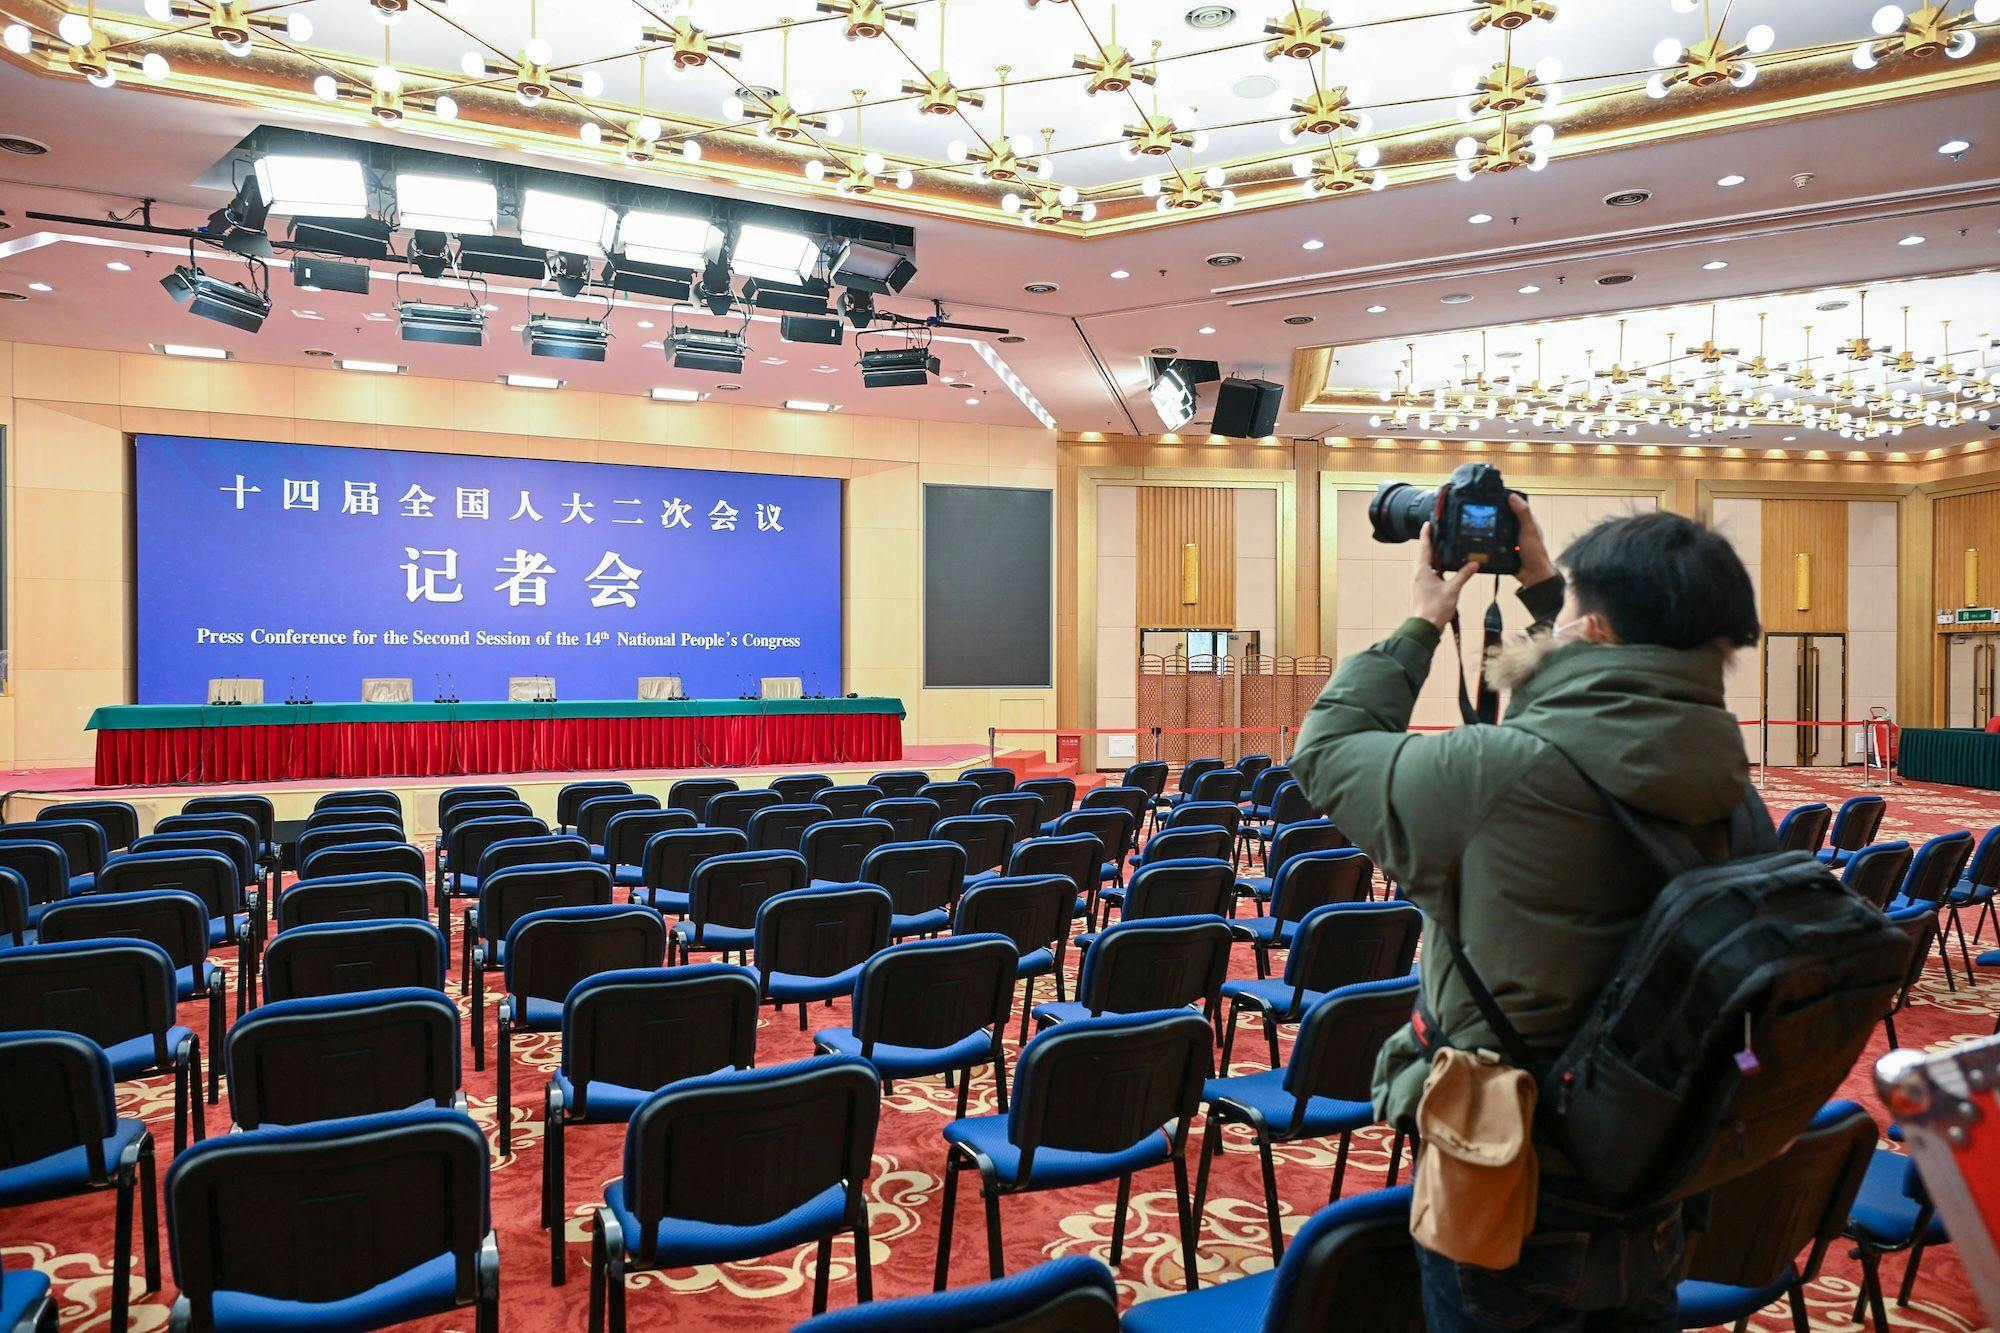 Ein Reporter arbeitet im Pressezentrum für die bevorstehenden jährlichen legislativen und politischen Beratungen in Peking, der Hauptstadt Chinas